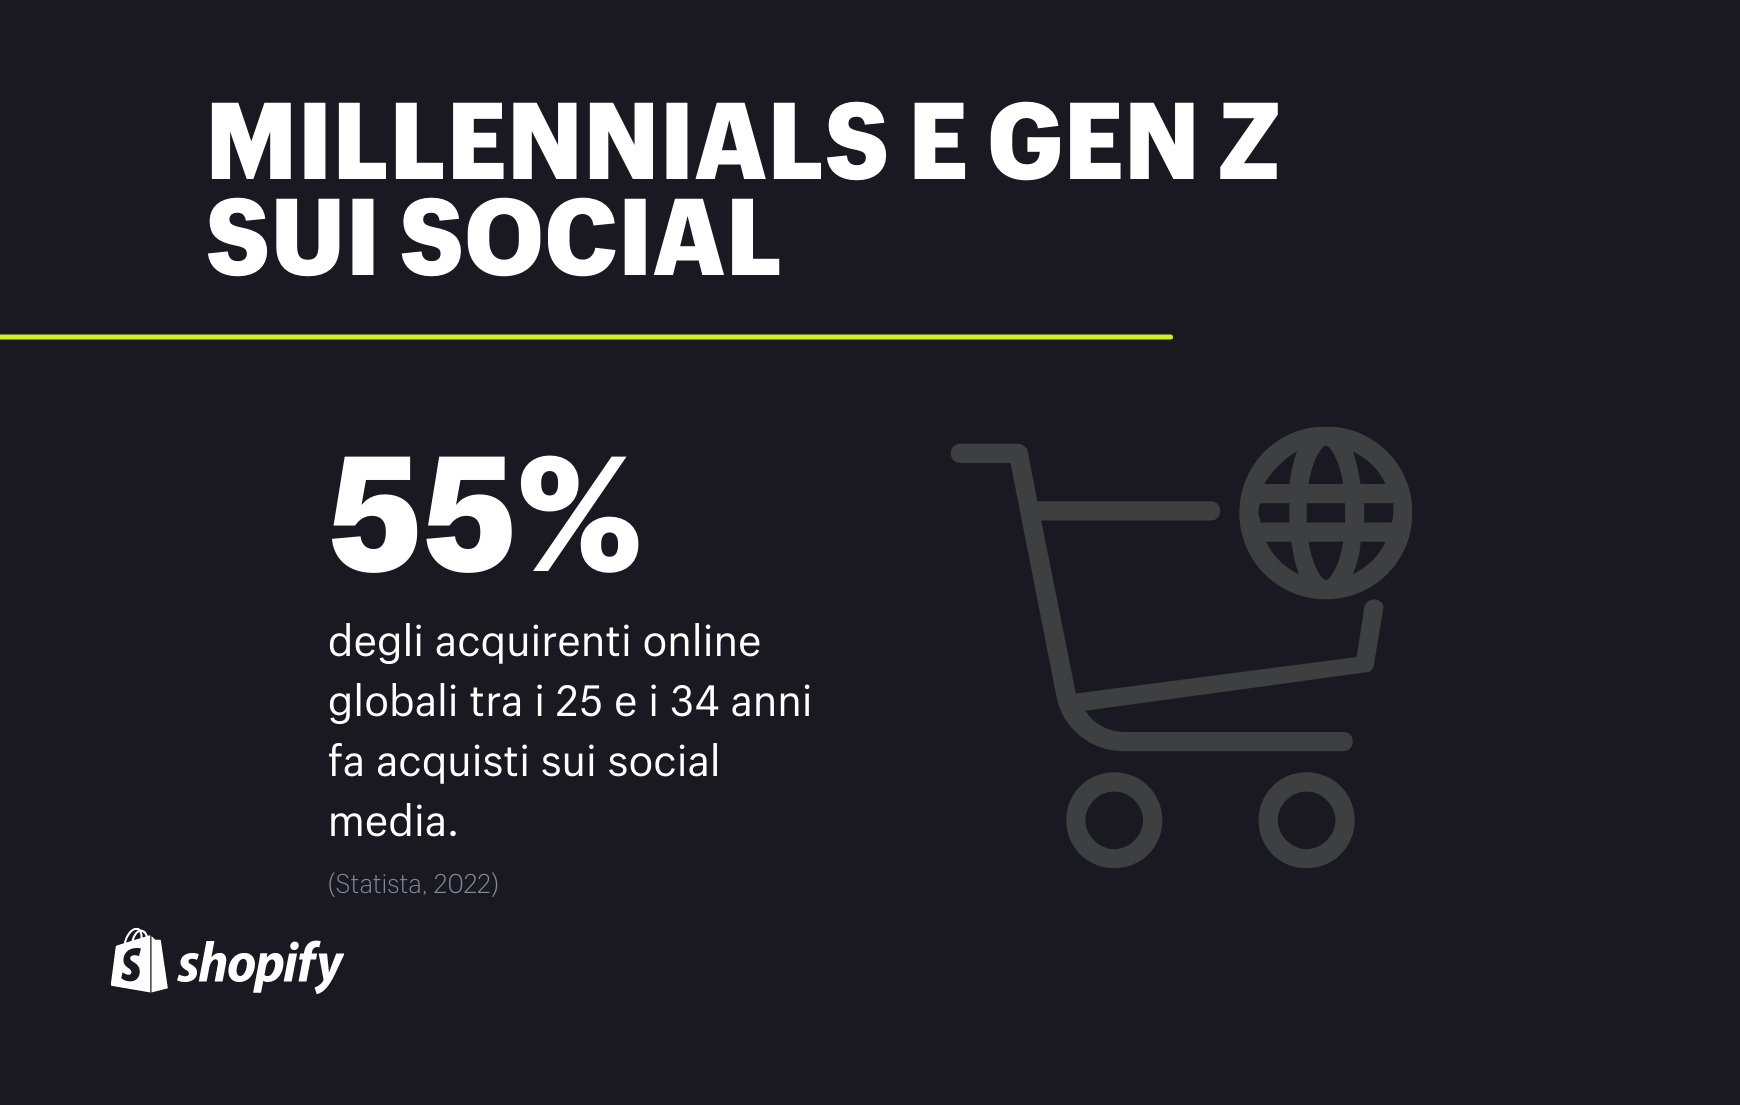 millennials e gen z social commerce